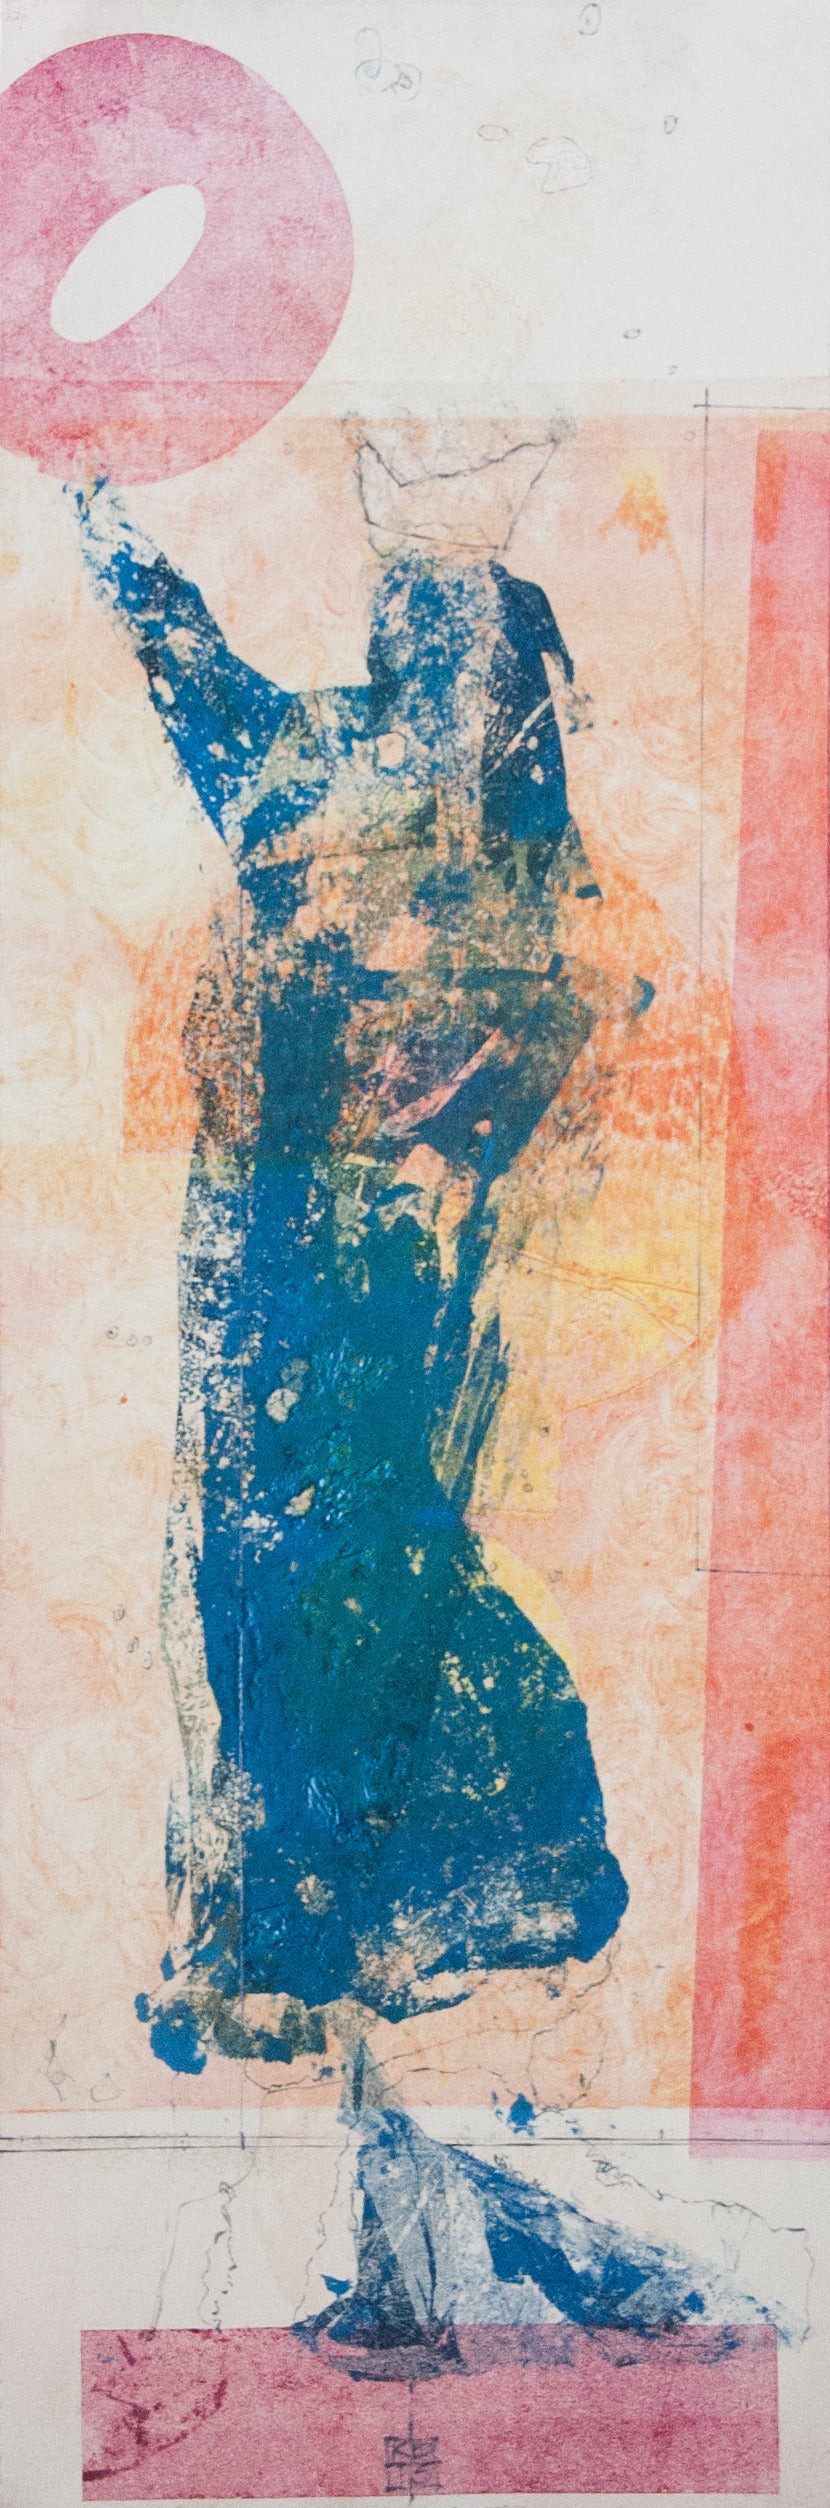 Karin Bruckner Abstract Print - OhLiberty